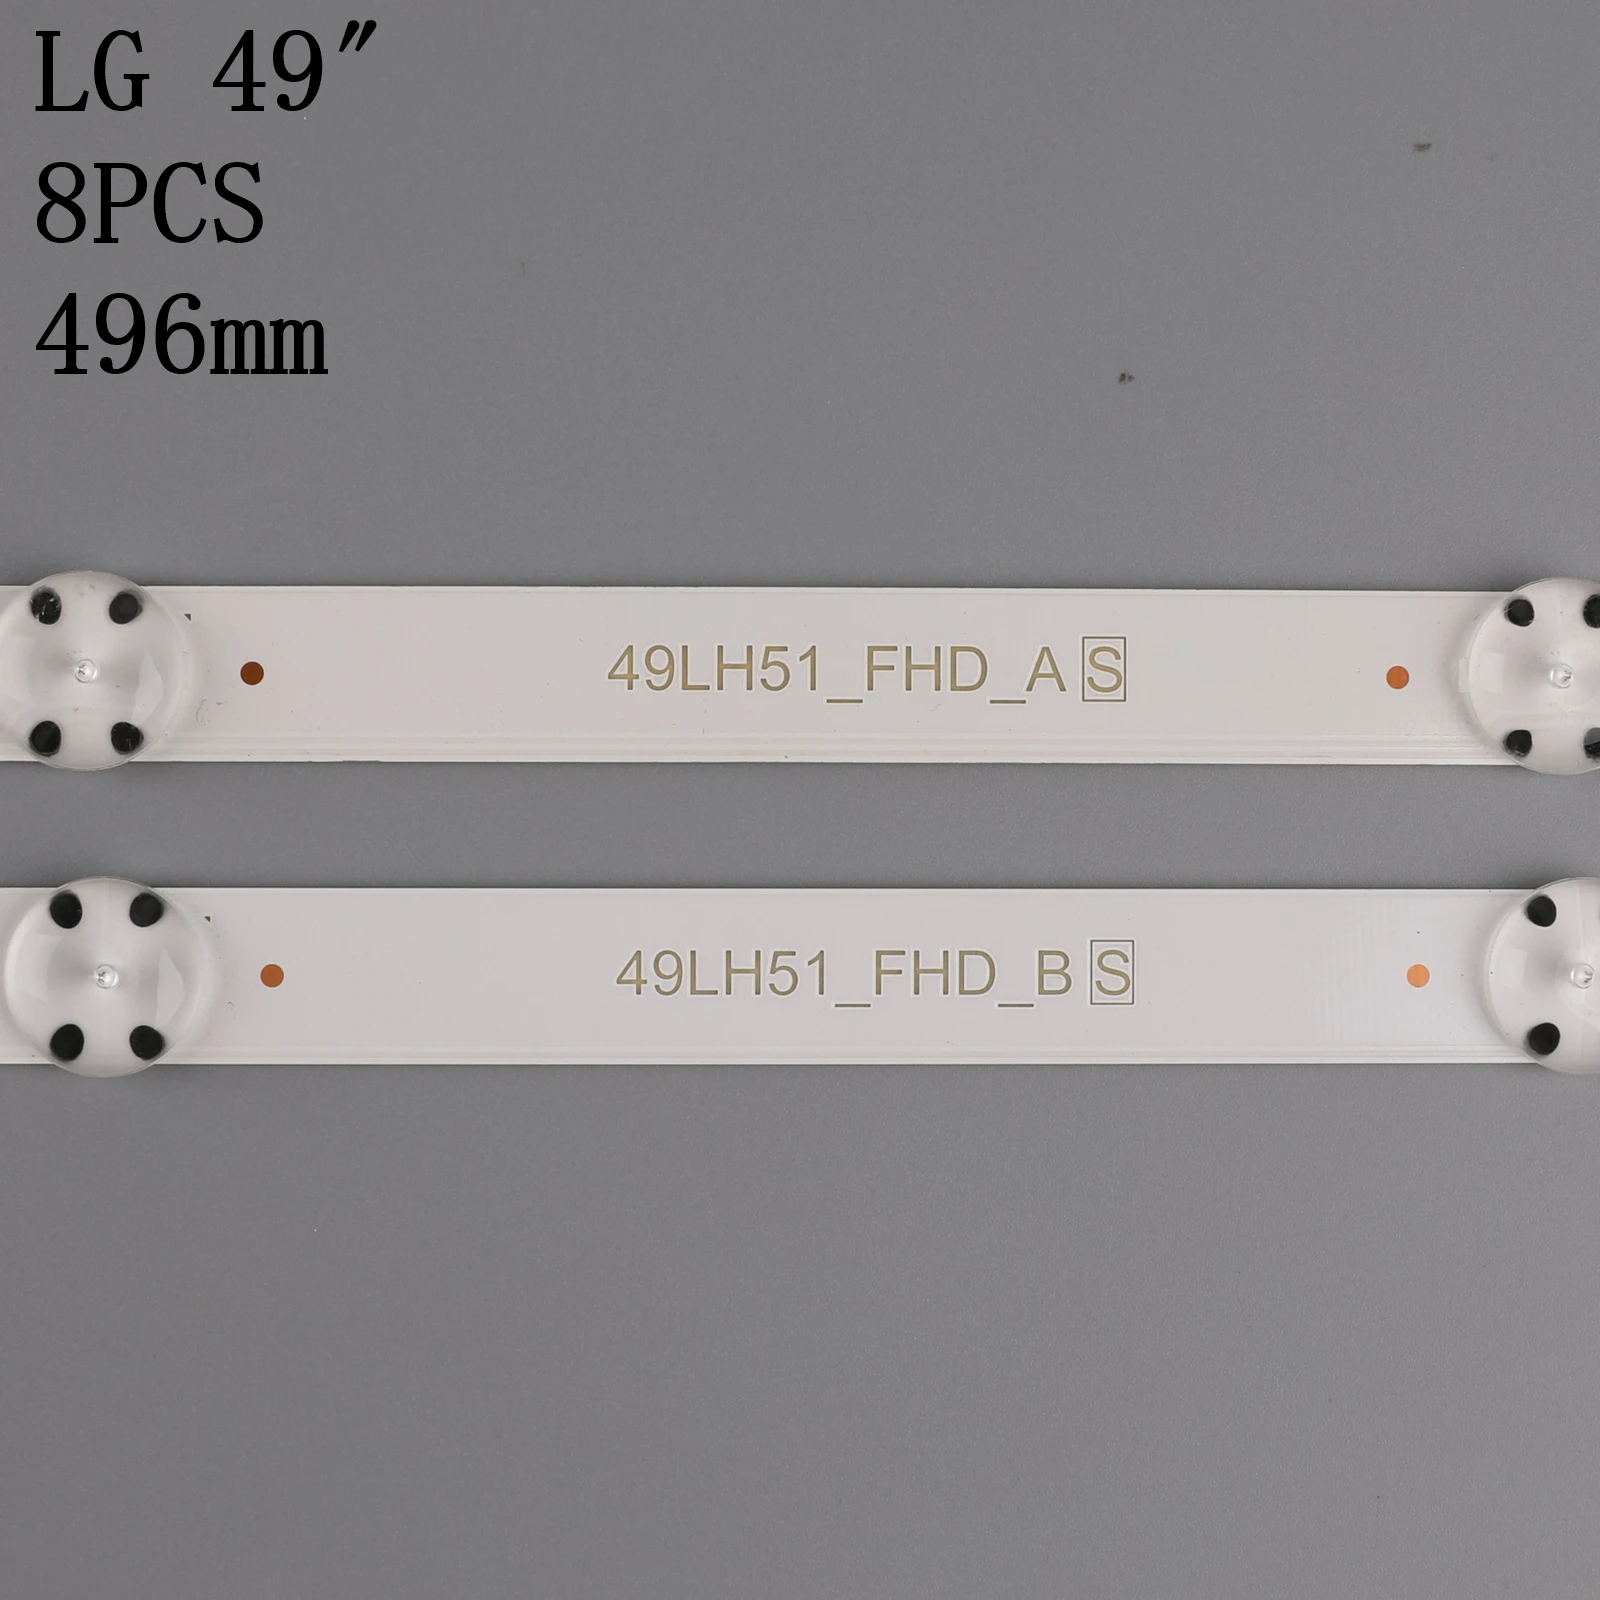 Nueva 1set=8 PCS de la retroiluminación LED de la tira para 49inch TV LG 49LH5100 49LH5700 49LH51_FHD_A 49LH51_FHD_B SSC_49inch_FHD_A B 1